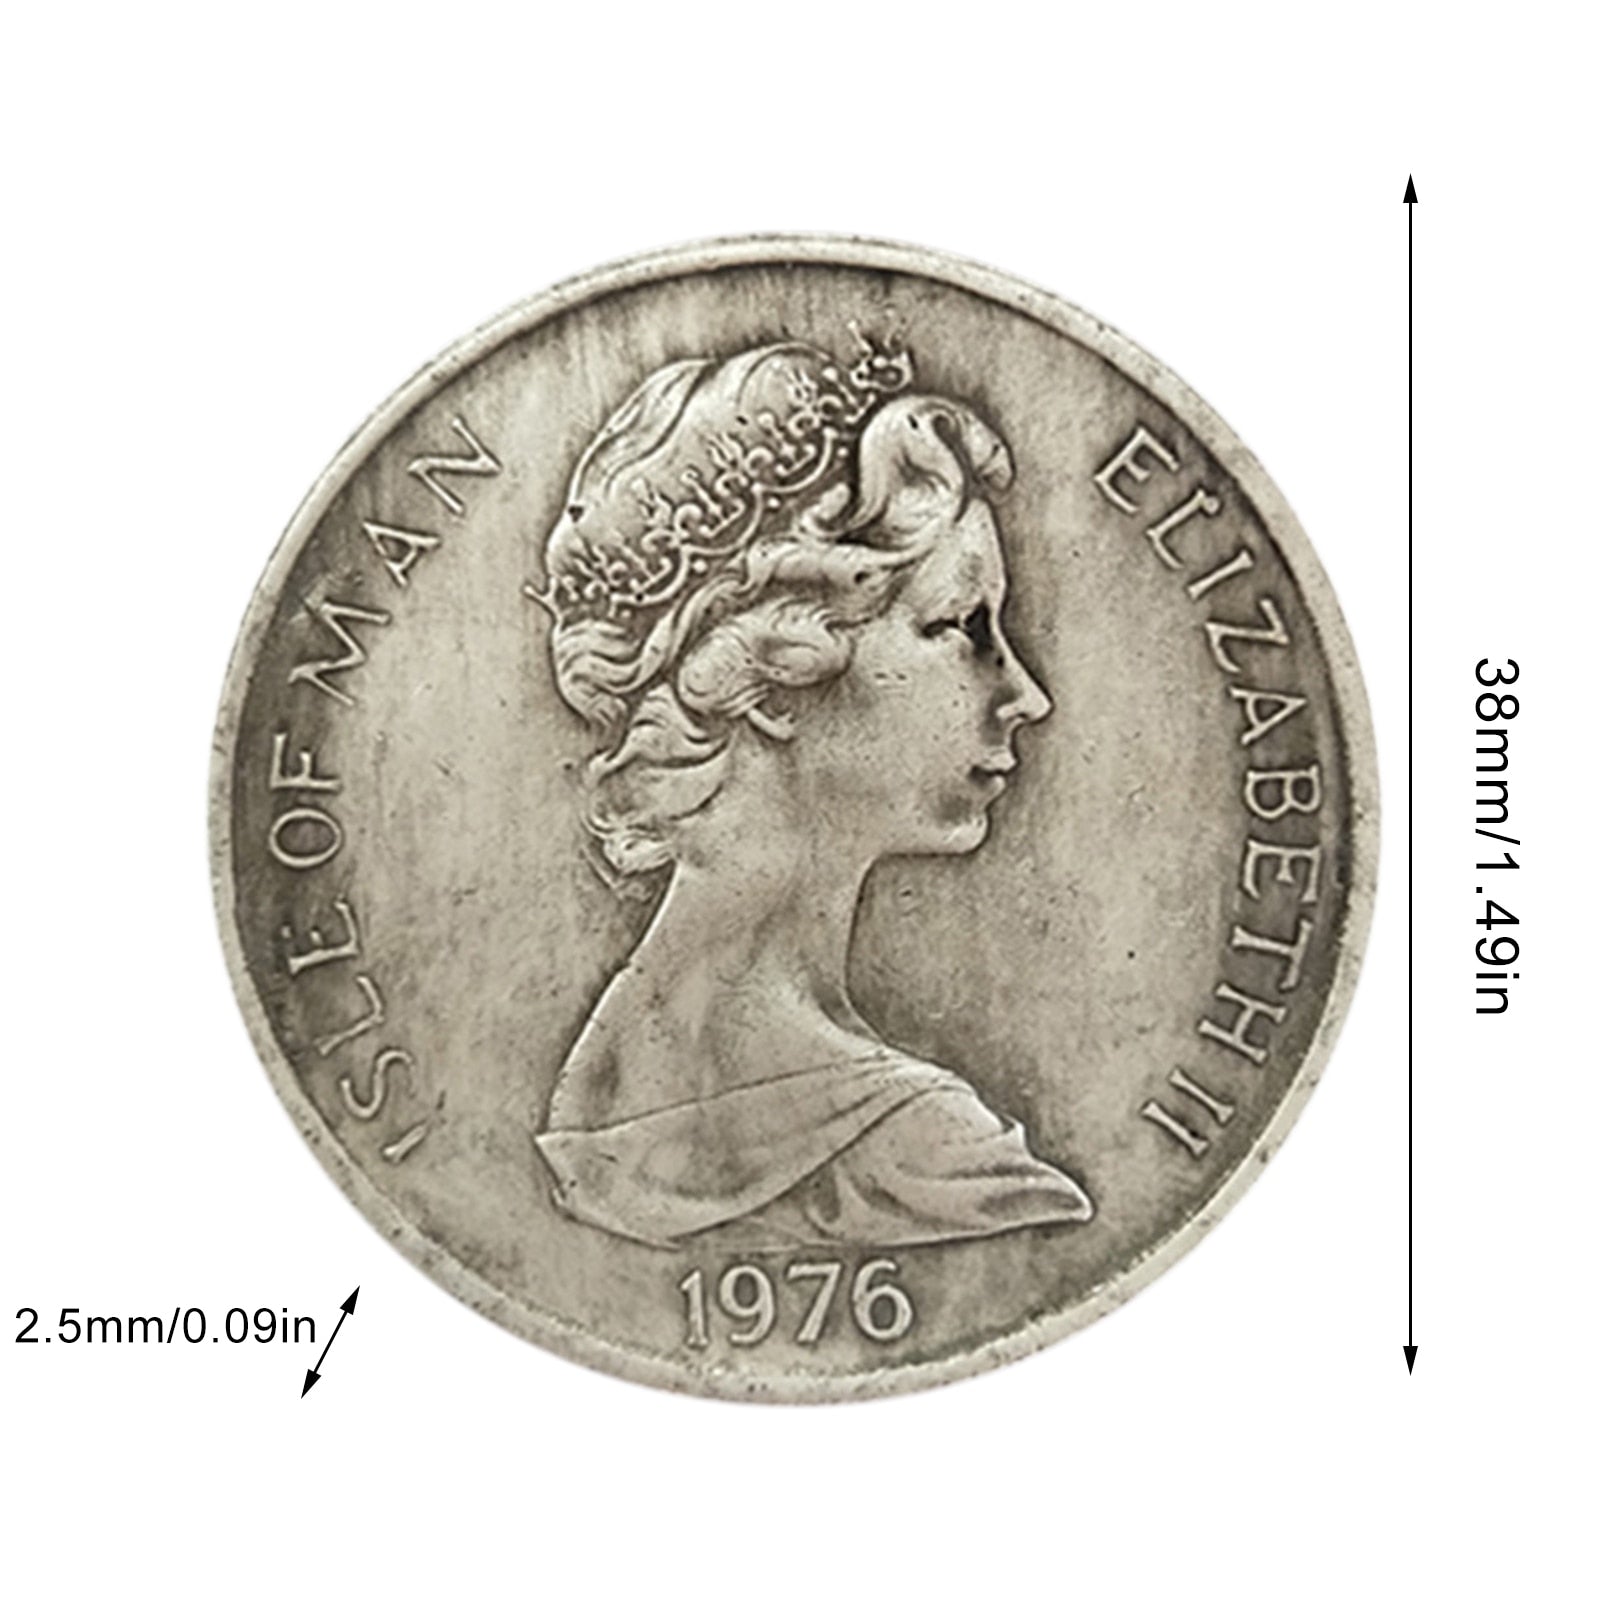 Queen Elizabeth II Souvenir Vintage Coin